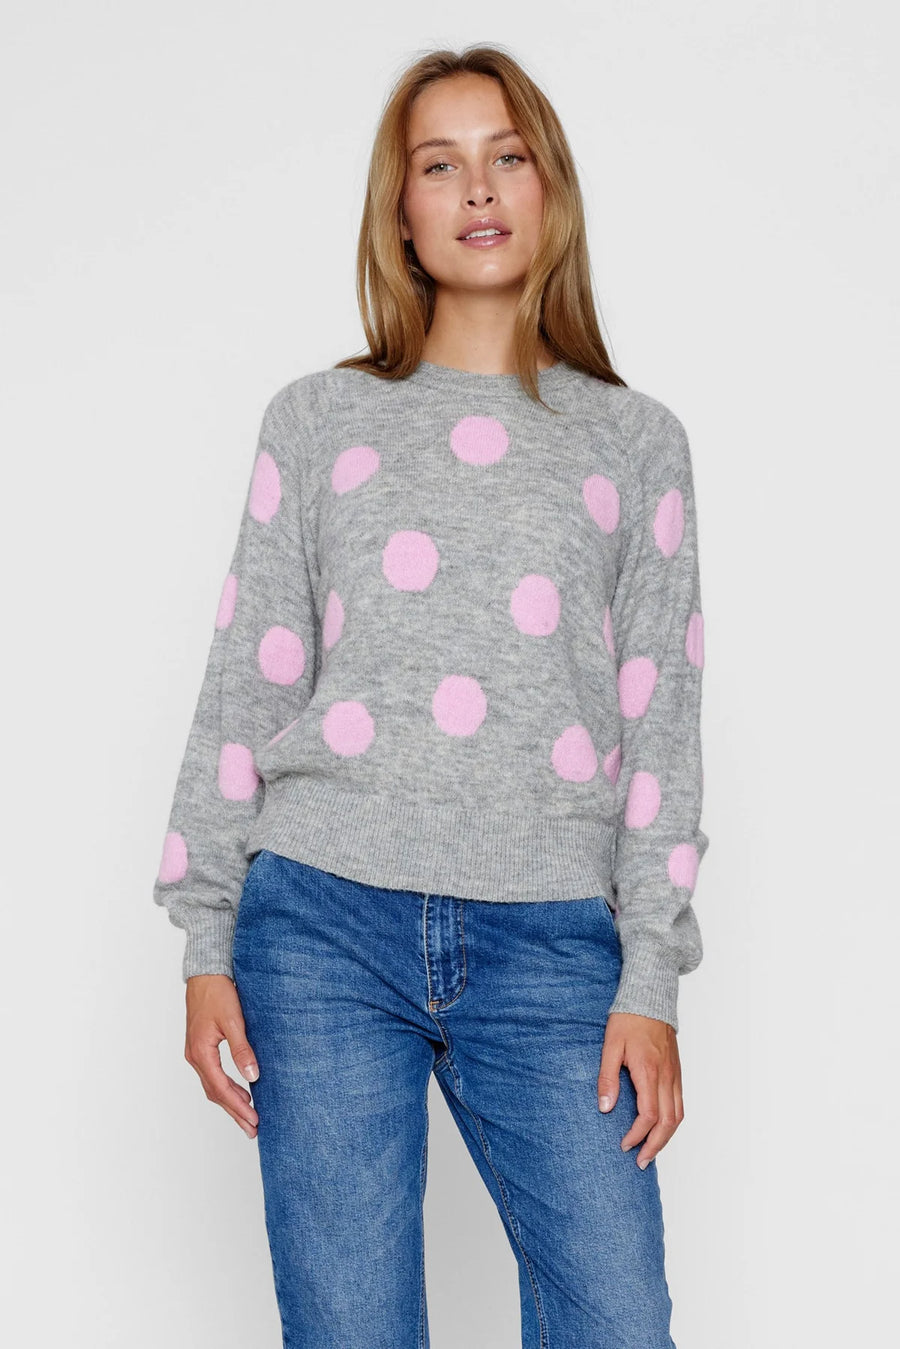 Nümph Nuellen Pullover pink frosting, grau mit rosa Punkten